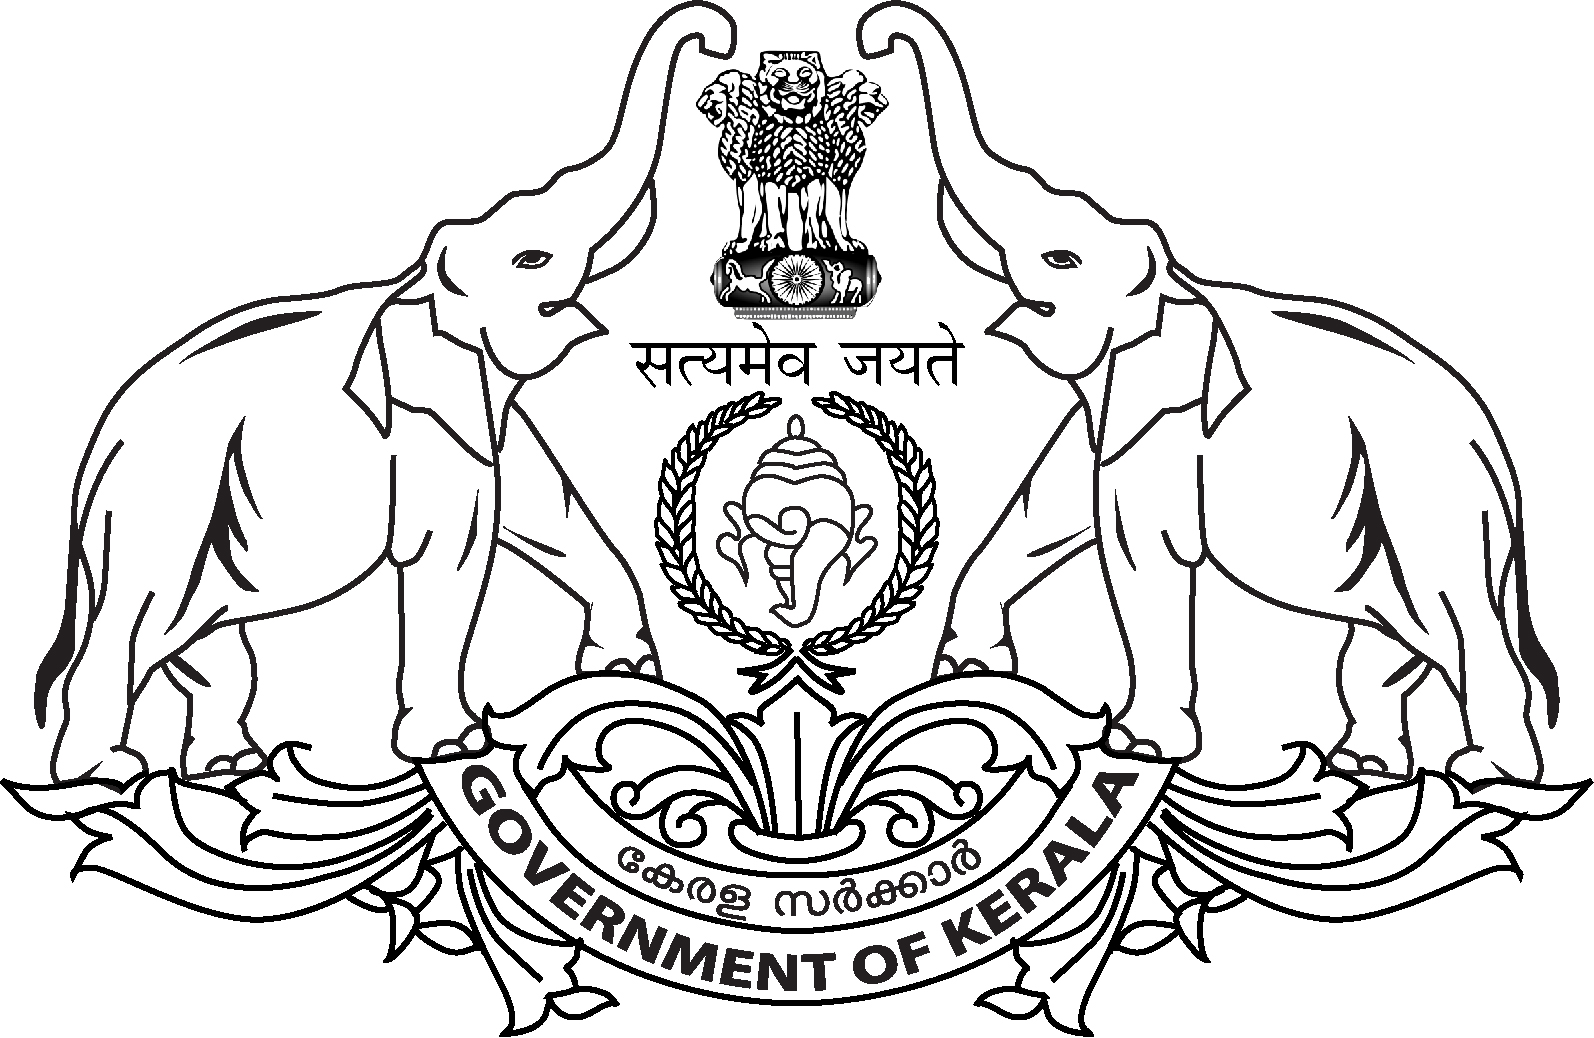 Kerala Goverment Emblem